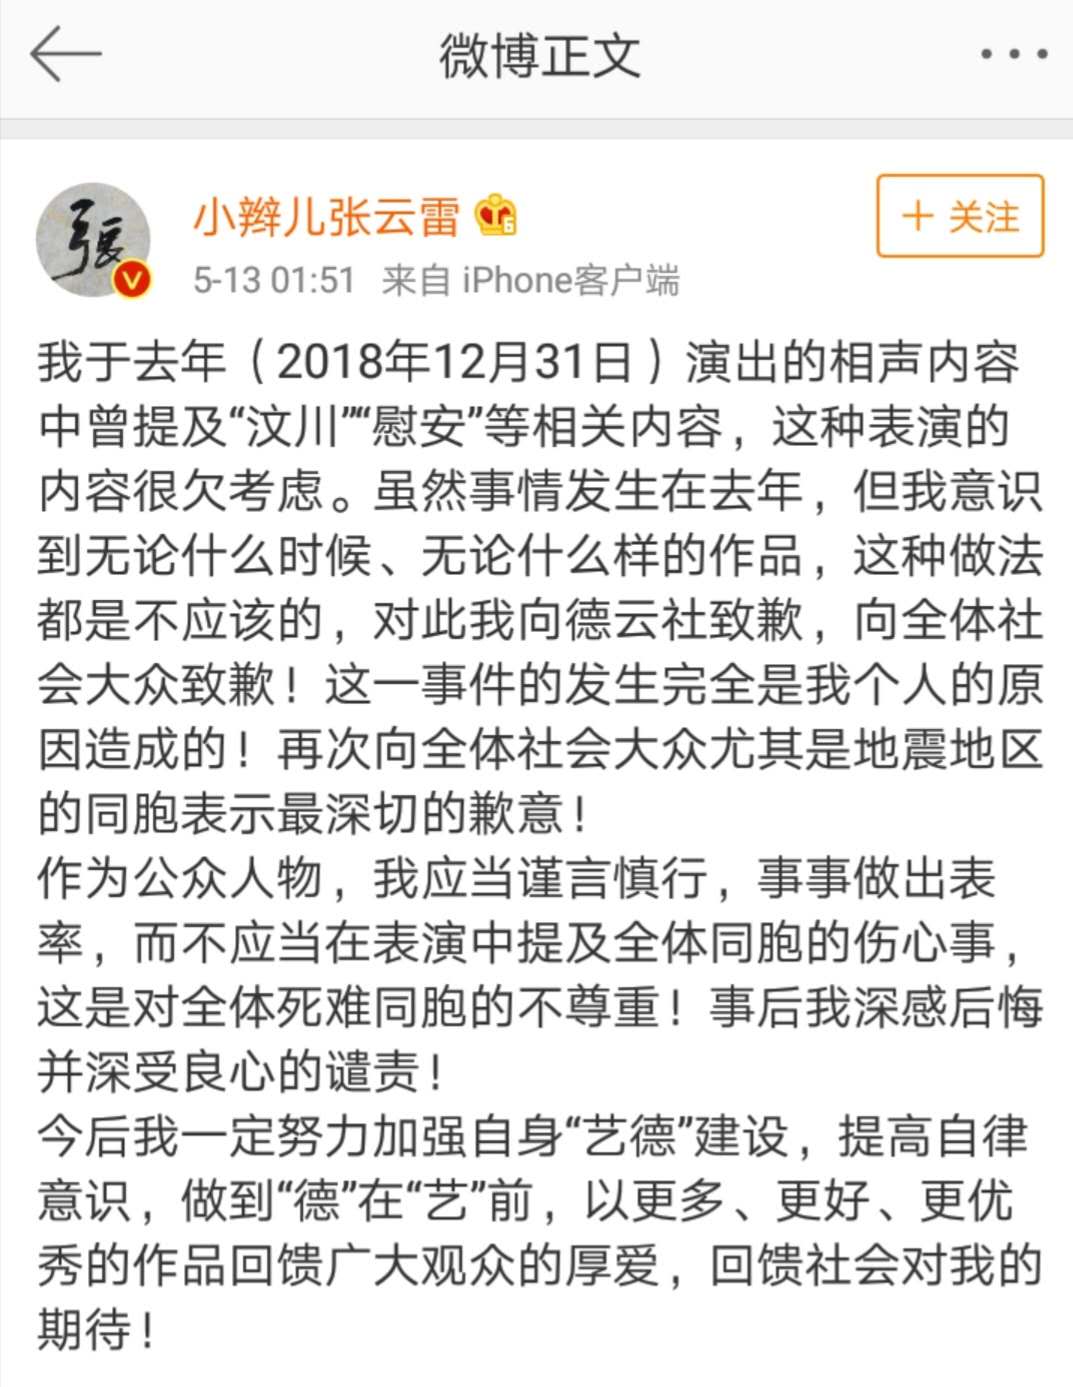 德云社演员张云雷调侃汶川地震被批 凌晨发文致歉:一定加强“艺德”建设